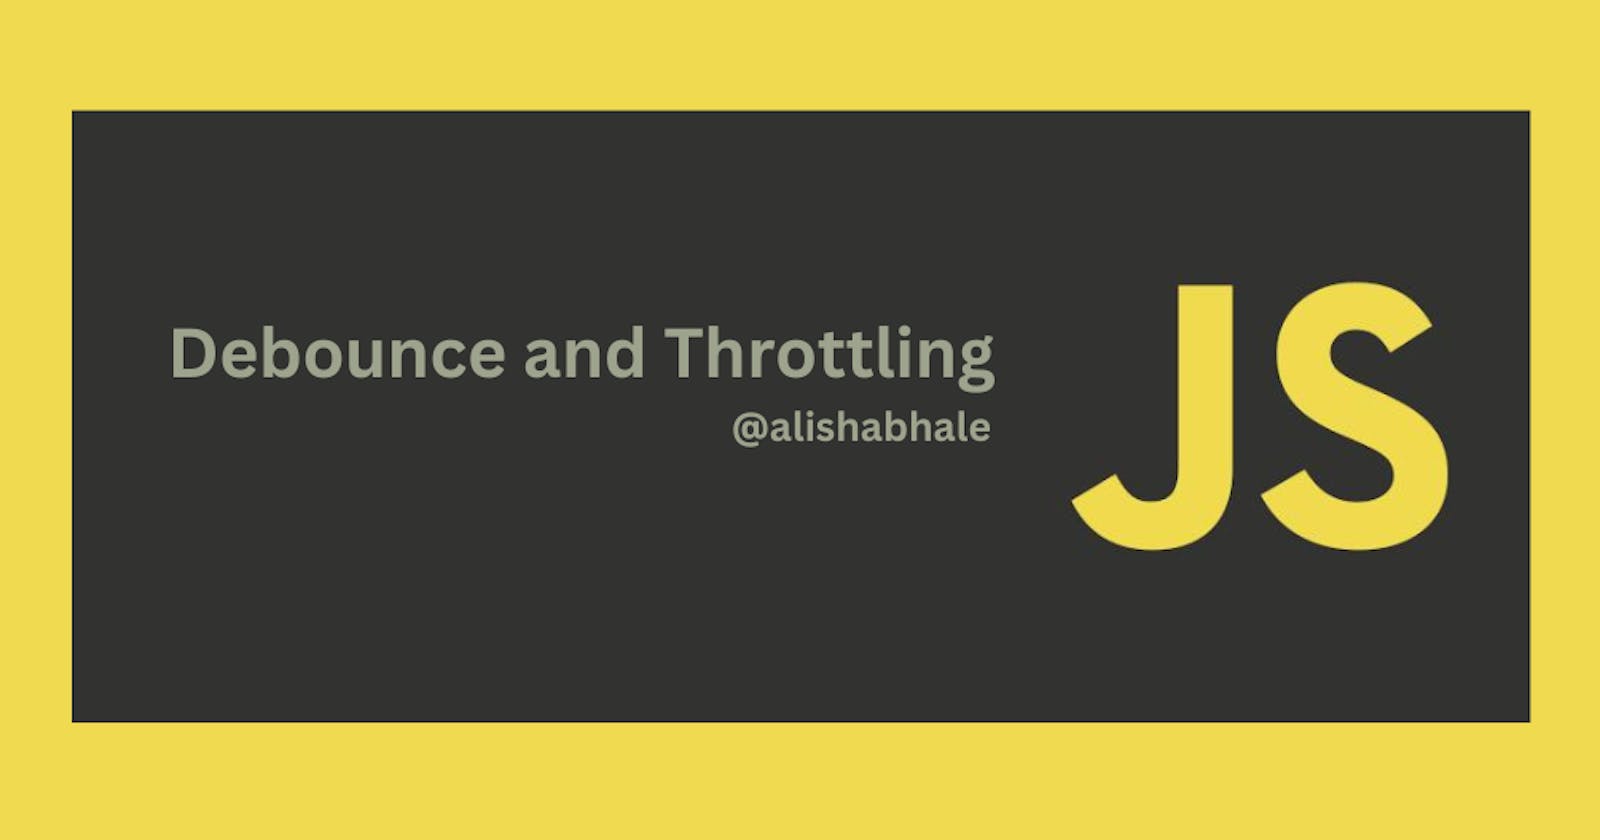 Debounce and Throttling in JavaScript